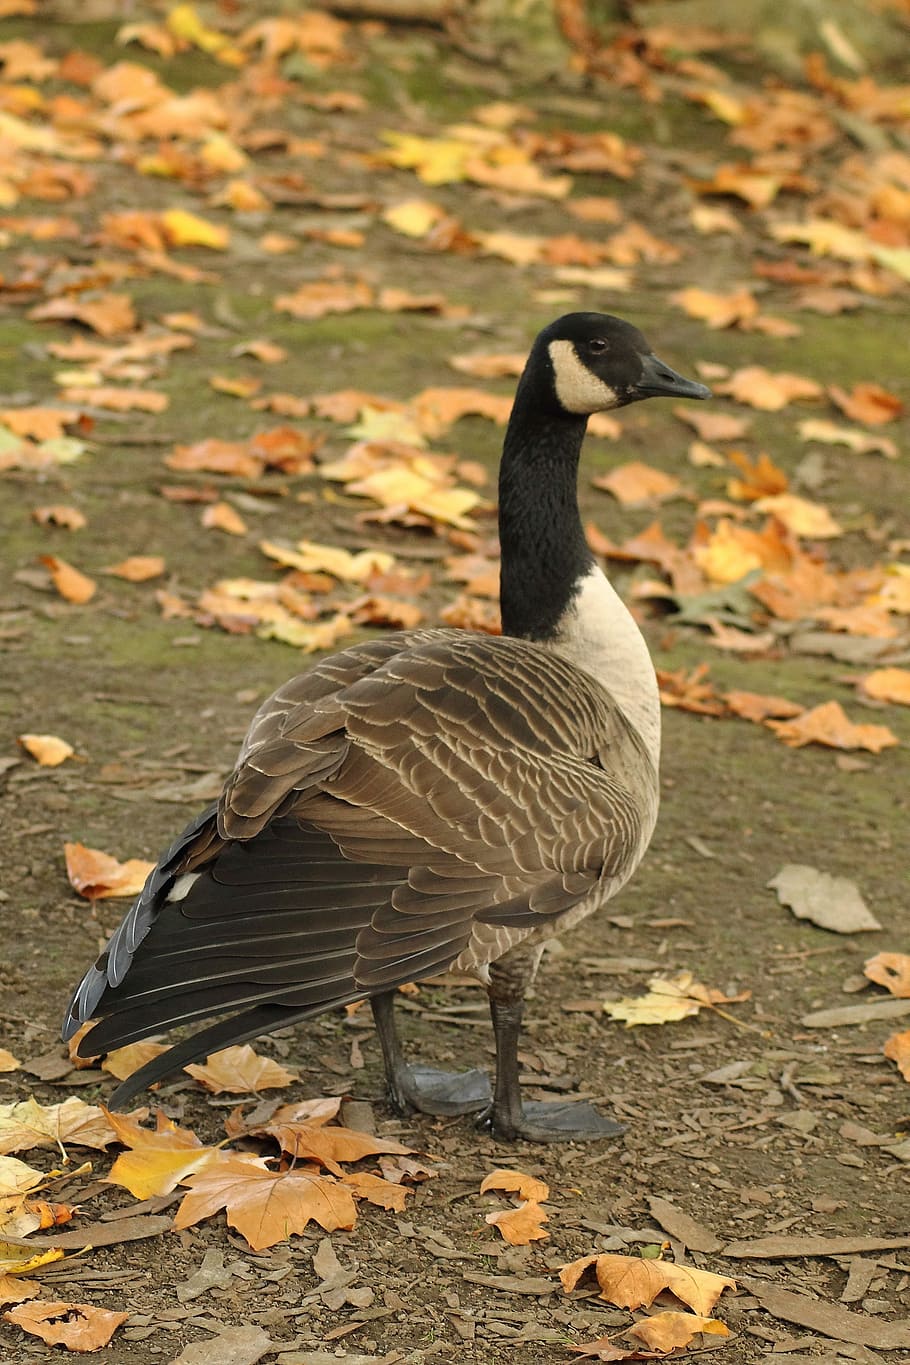 Canada Goose, Wild Goose, Water Bird, branta canadensis, bird, goose, stand, plumage, autumn, nature